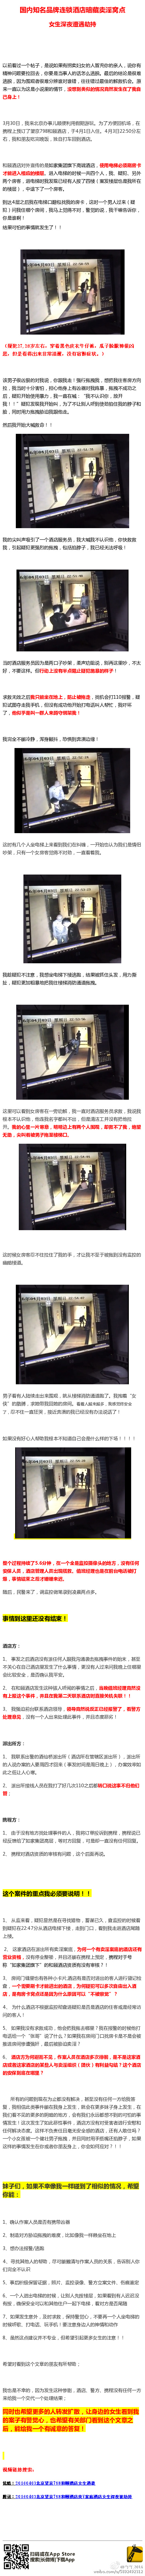 女網友曝在北京高端酒店遇襲 警方回應:正核實(圖)